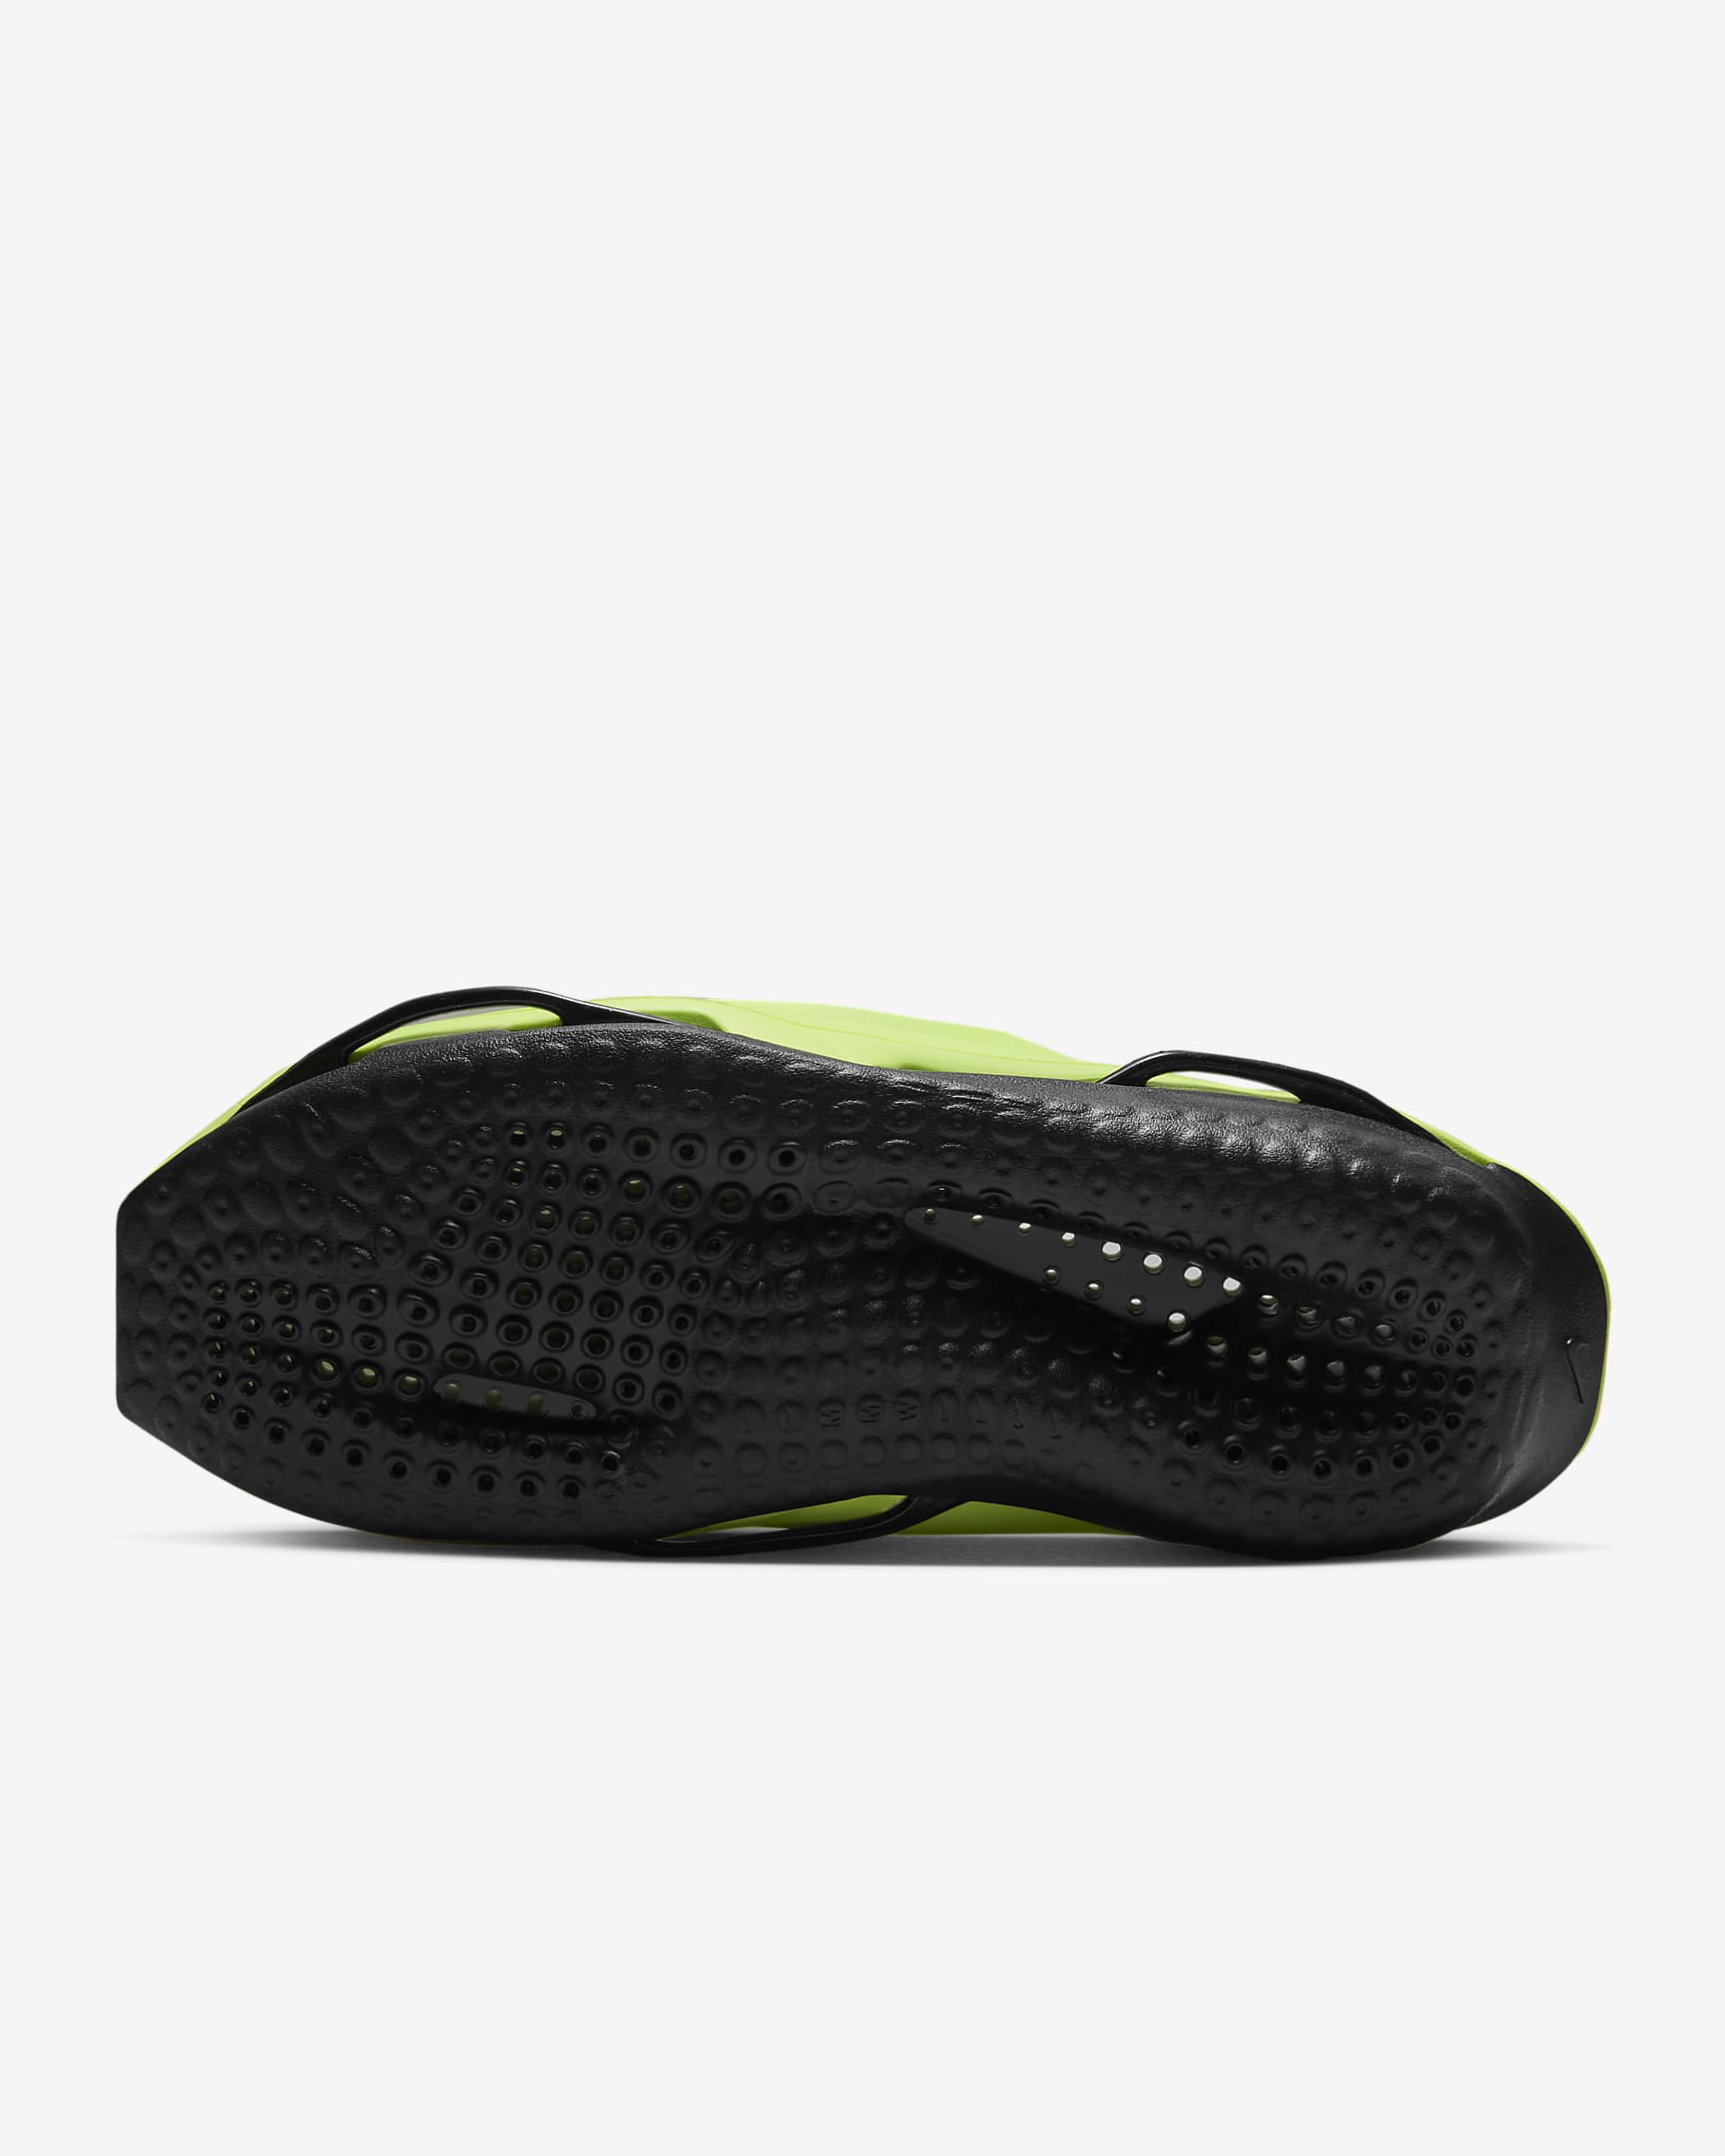 Nike x MMW 005 Men's Slides - Volt/Black/Volt